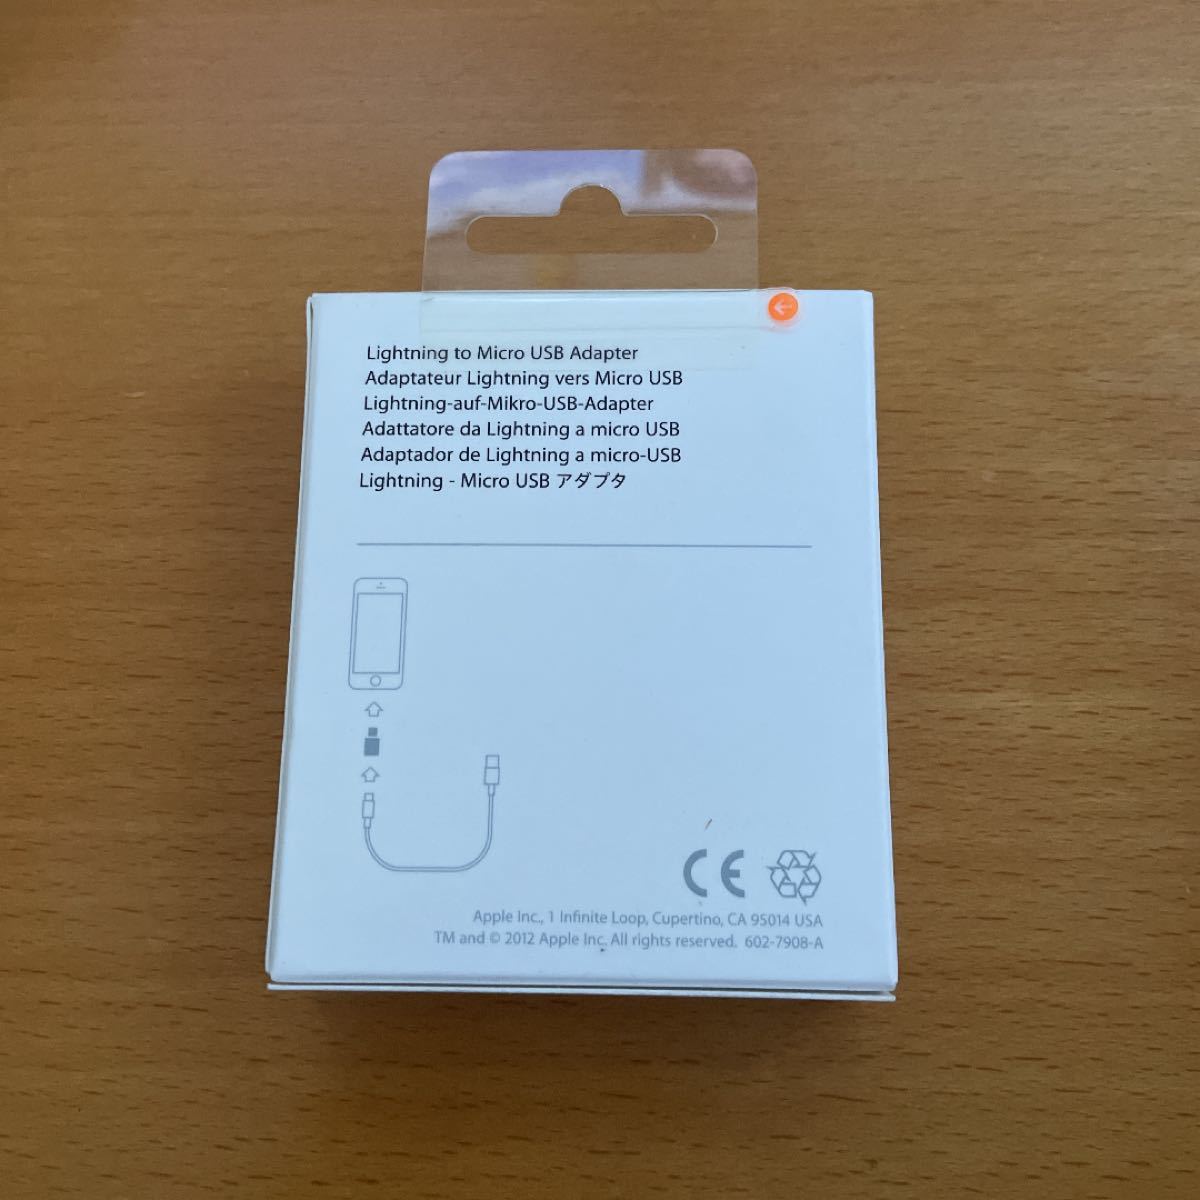 純正 Apple Lightning to Micro USB Adapter アダプター MD820AM/A